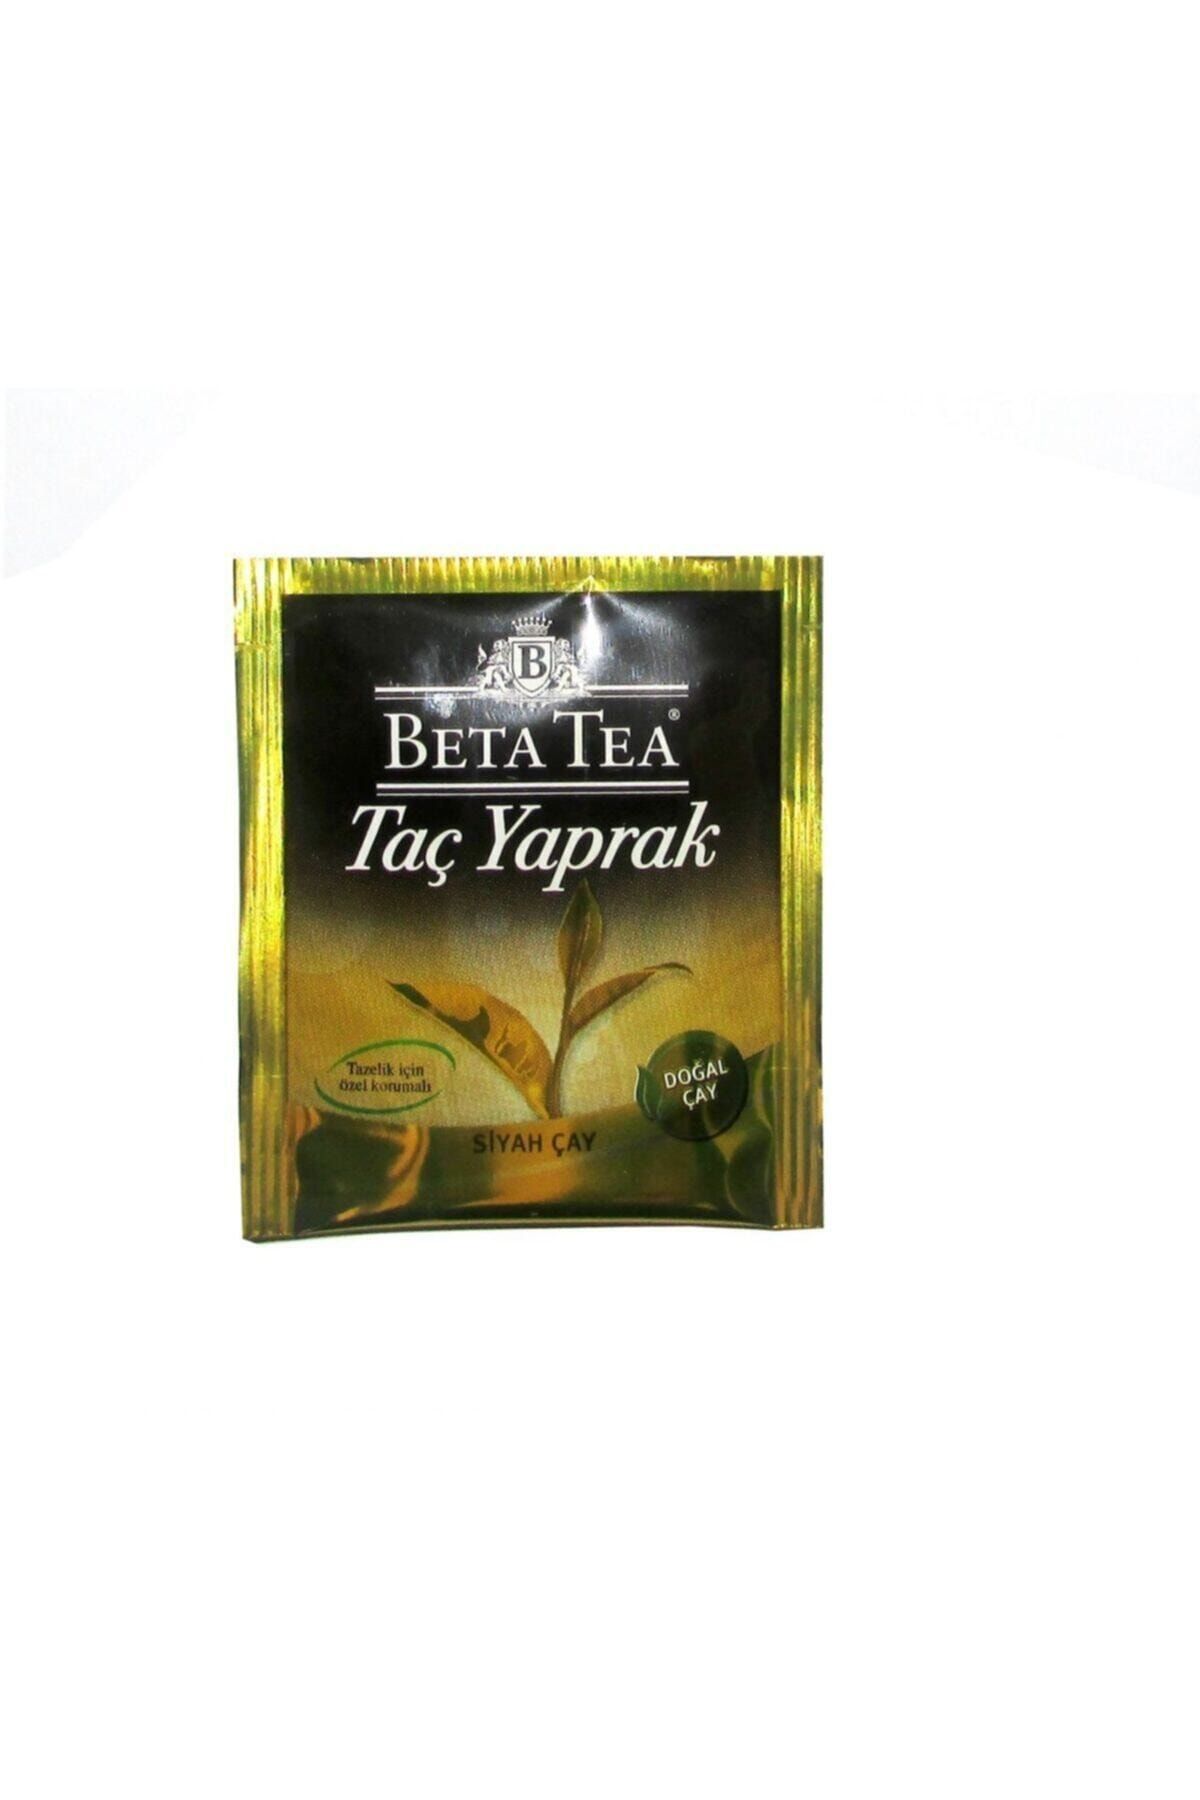 Beta Tea Taç Yaprak Siyah Bardak Poşet Çay 25 X 2 g